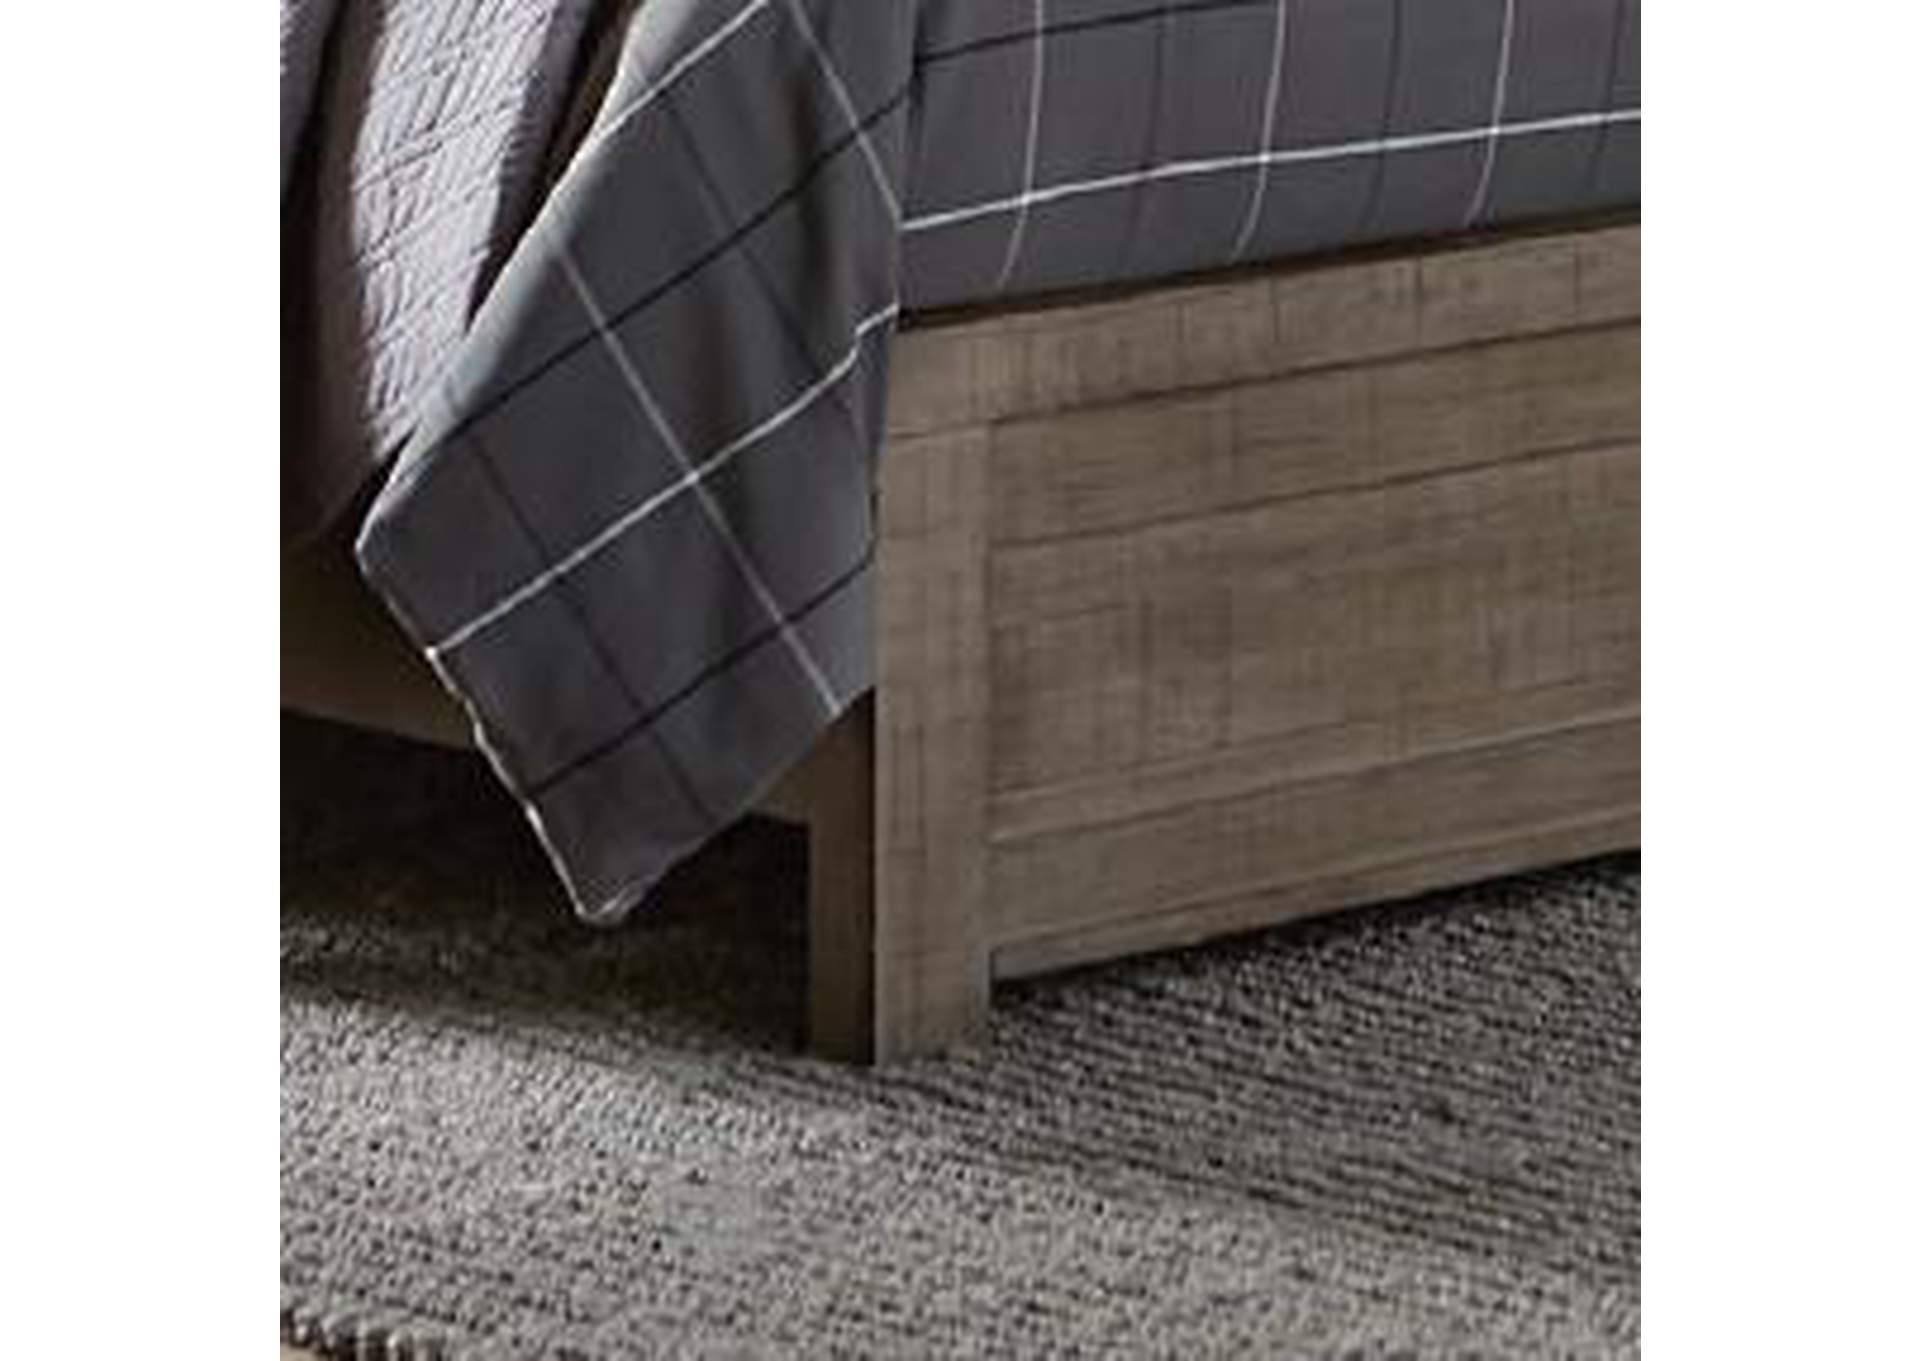 Ruff Hewn Twin Panel Bed in Weathered Taupe,Pulaski Furniture